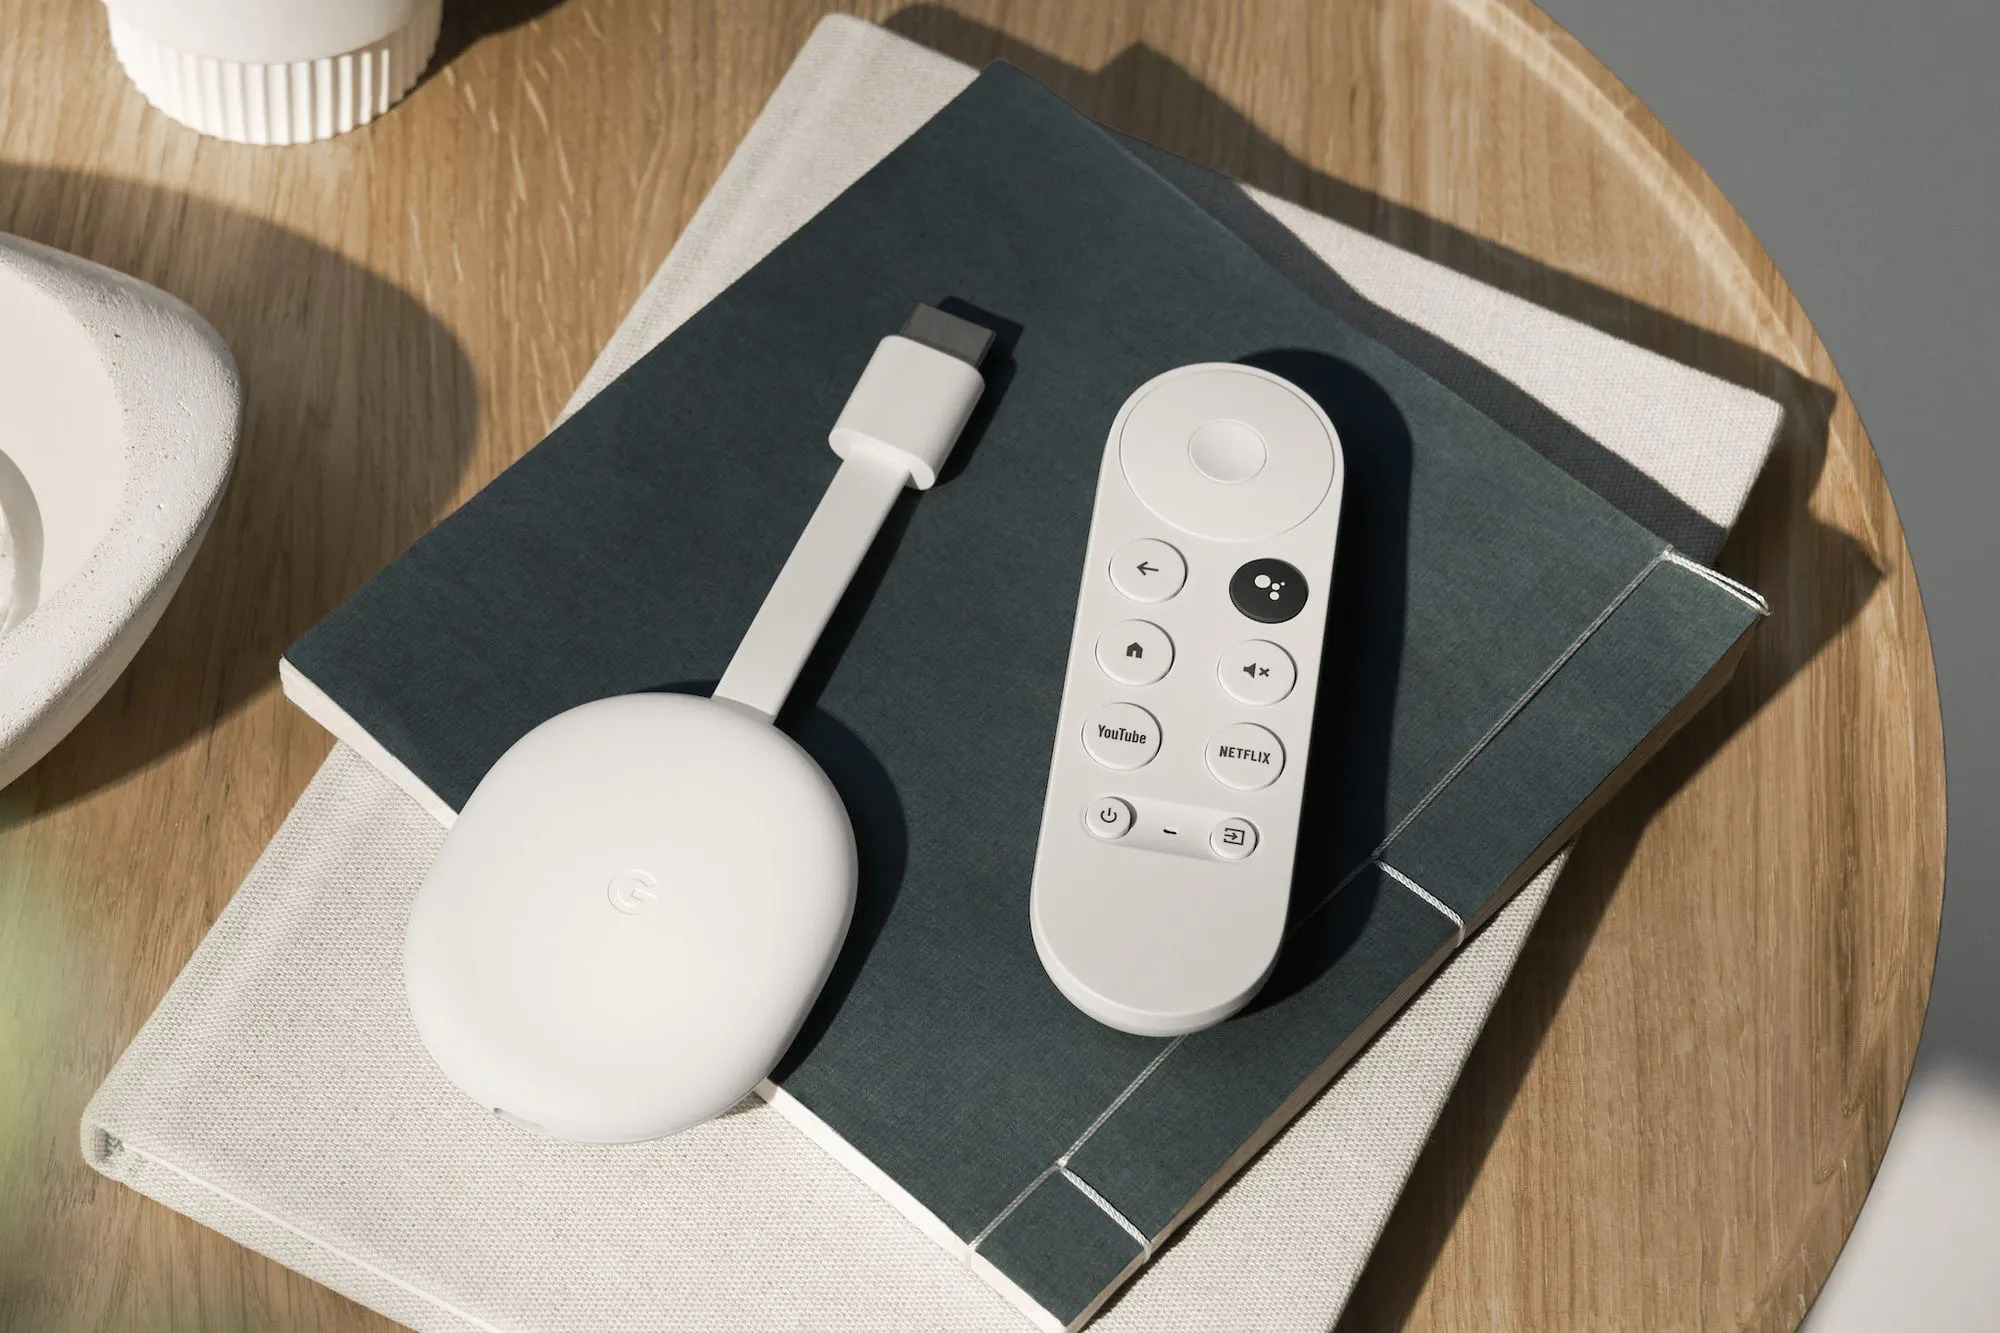 Offerta limitata nel tempo: Chromecast con Google TV (HD) su Amazon con uno sconto del 33%.